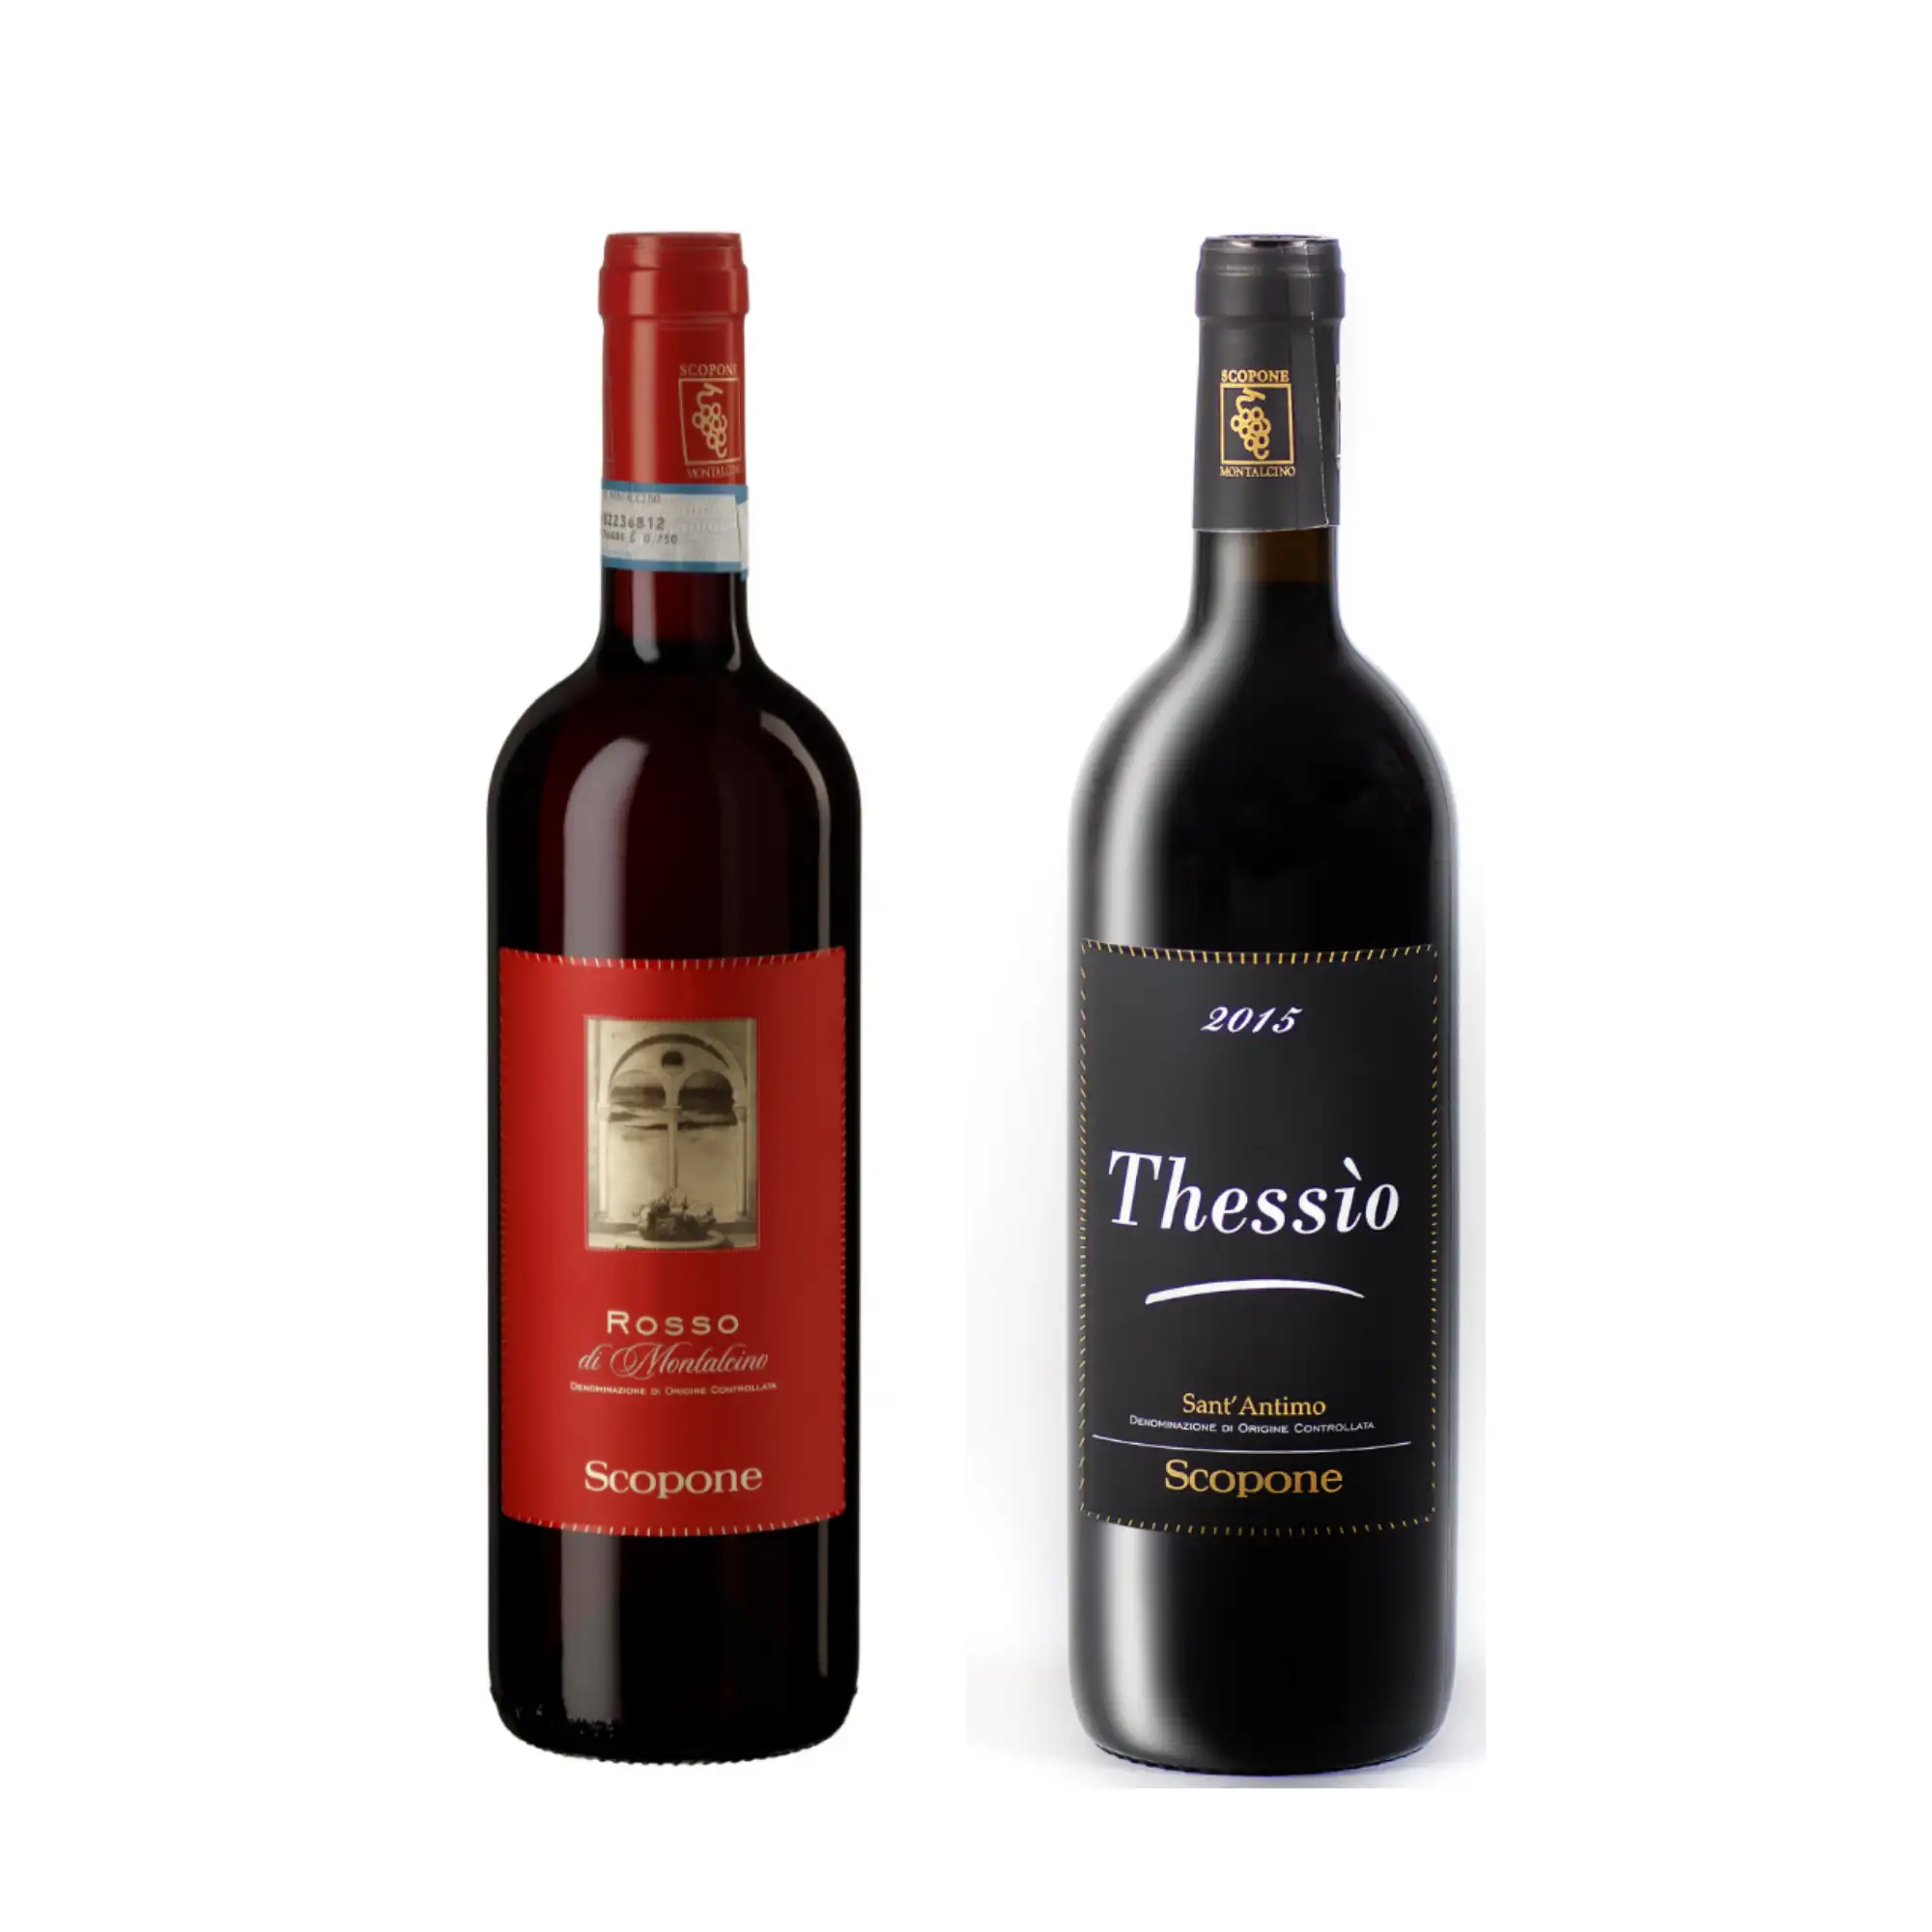 उच्च गुणवत्ता दो शराब की बोतलें सेट इतालवी लाल शराब thessio 2015 और रोसो 2019 मादक पेय